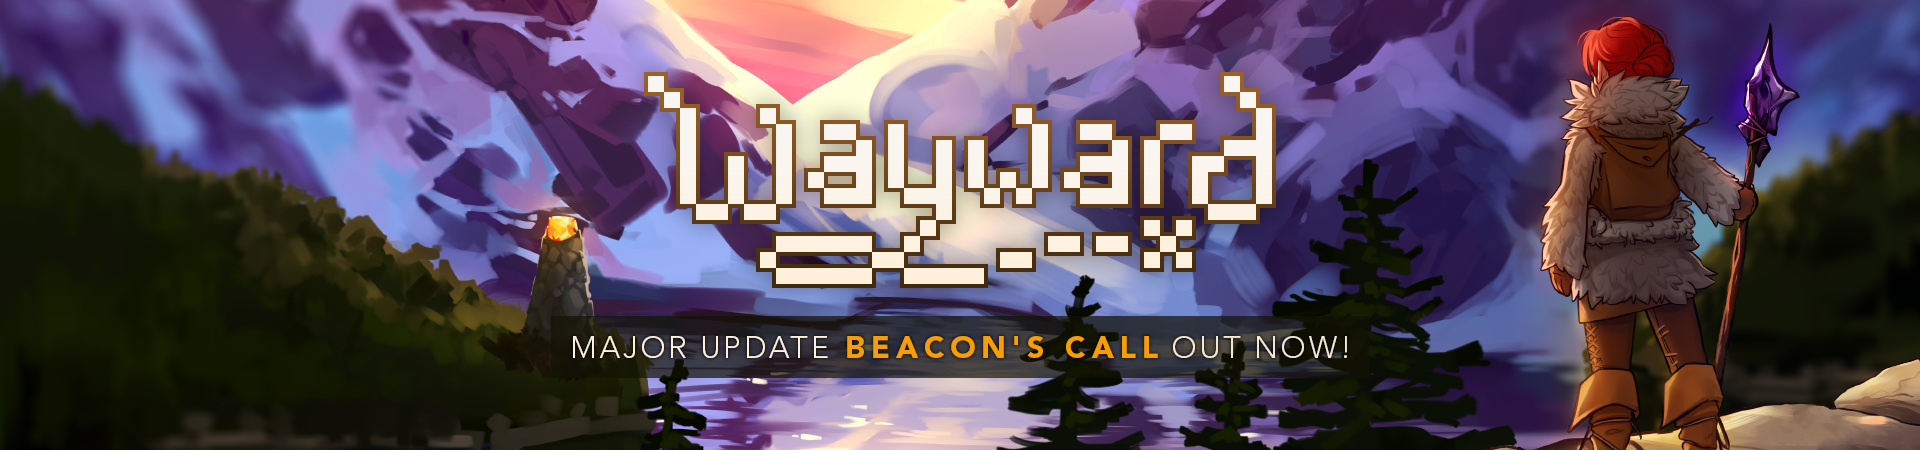 Beacon's Call News Banner